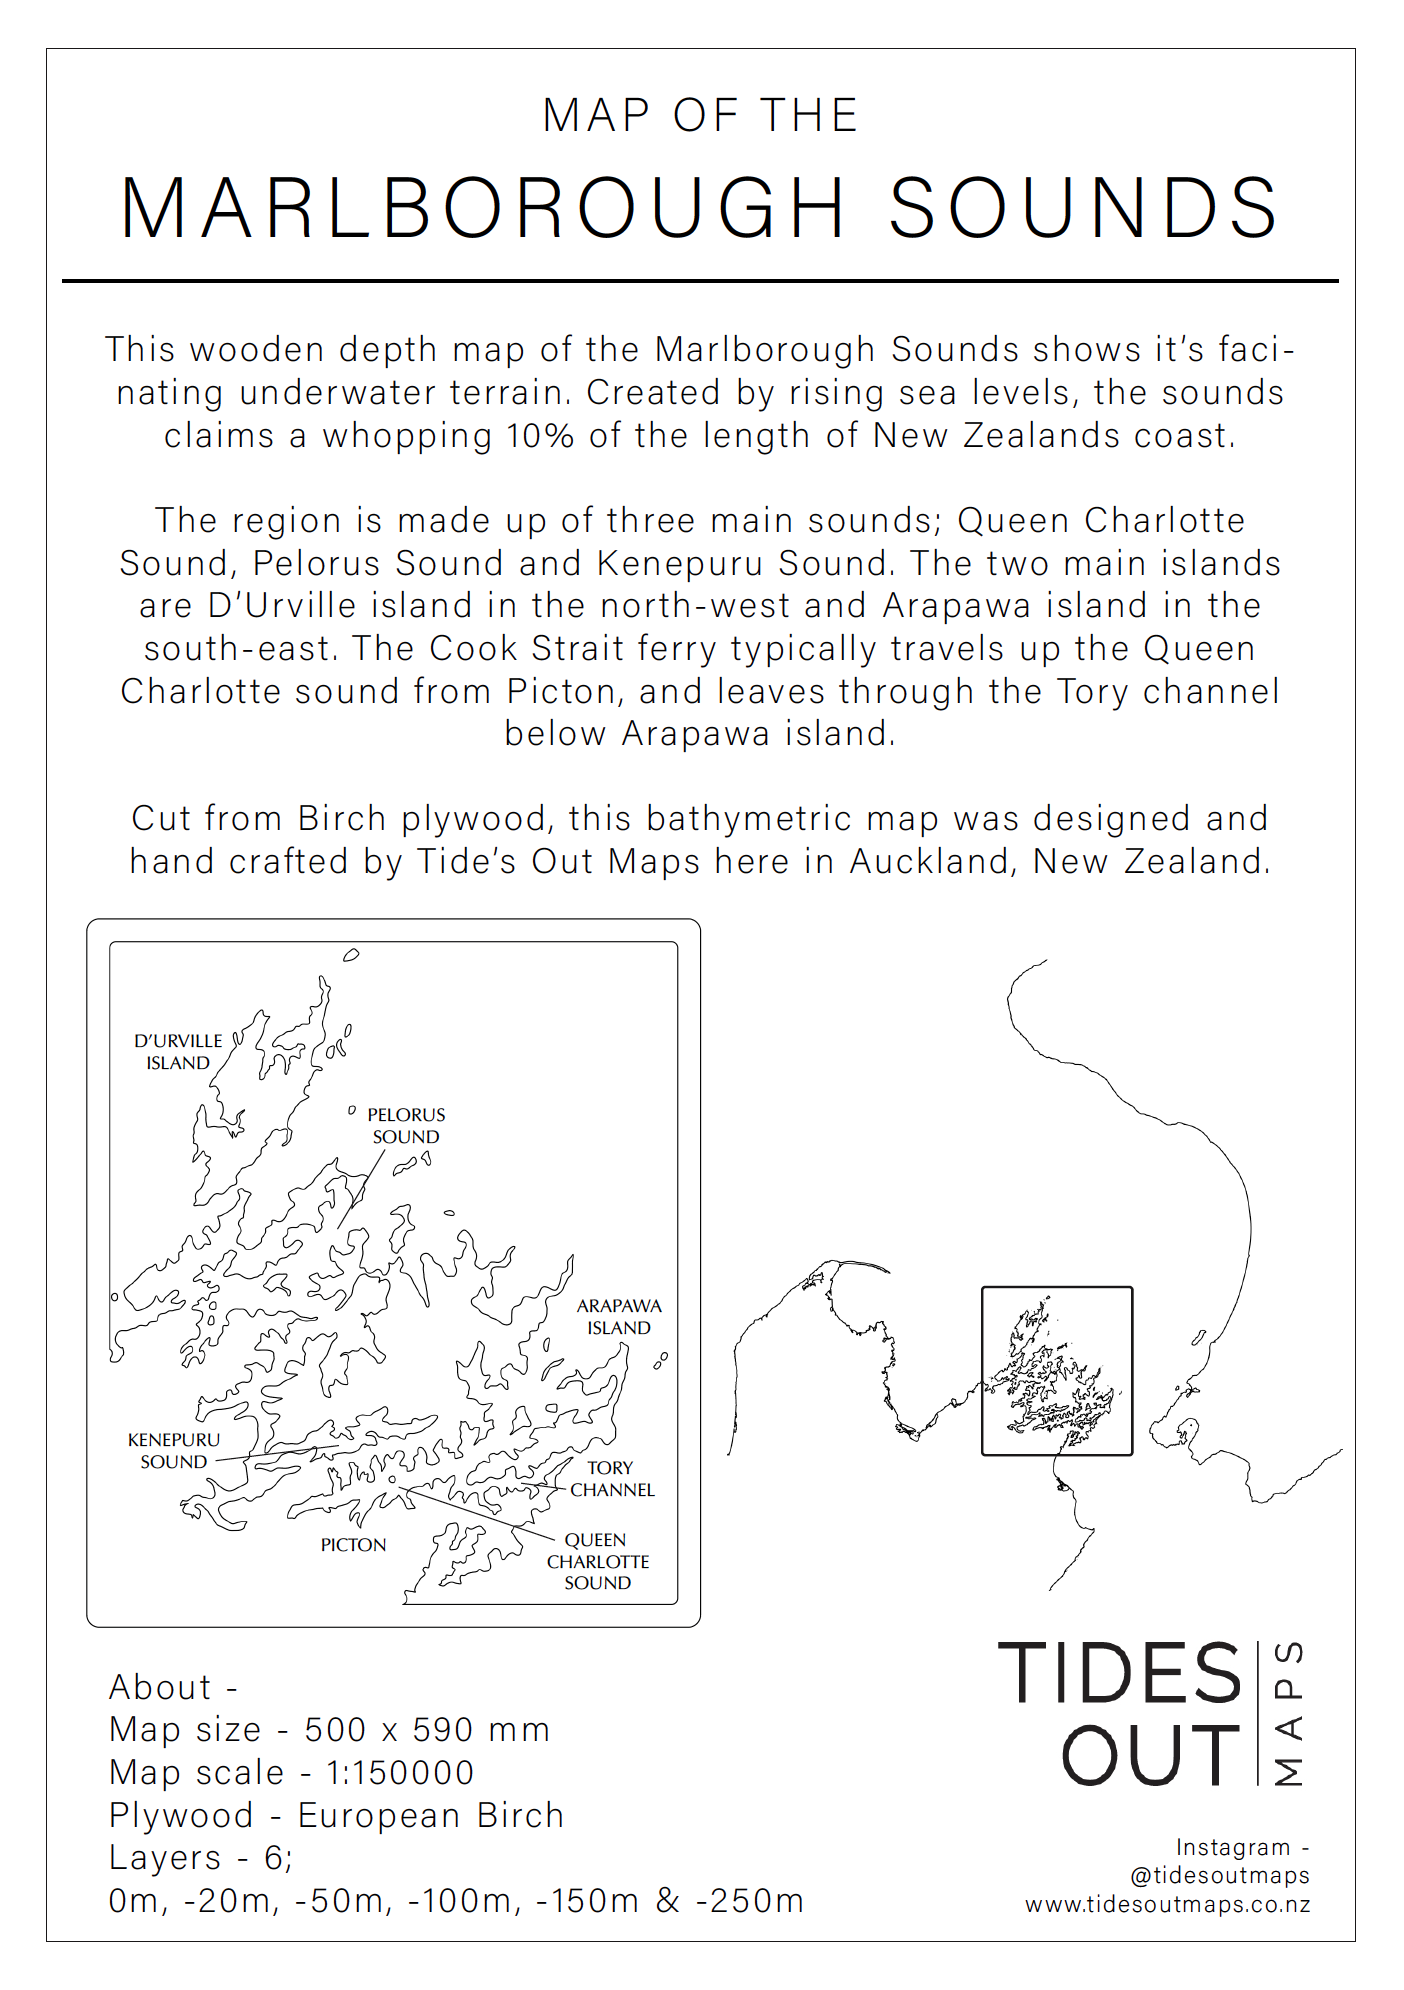 Marlborough Sounds - Tide's Out Maps